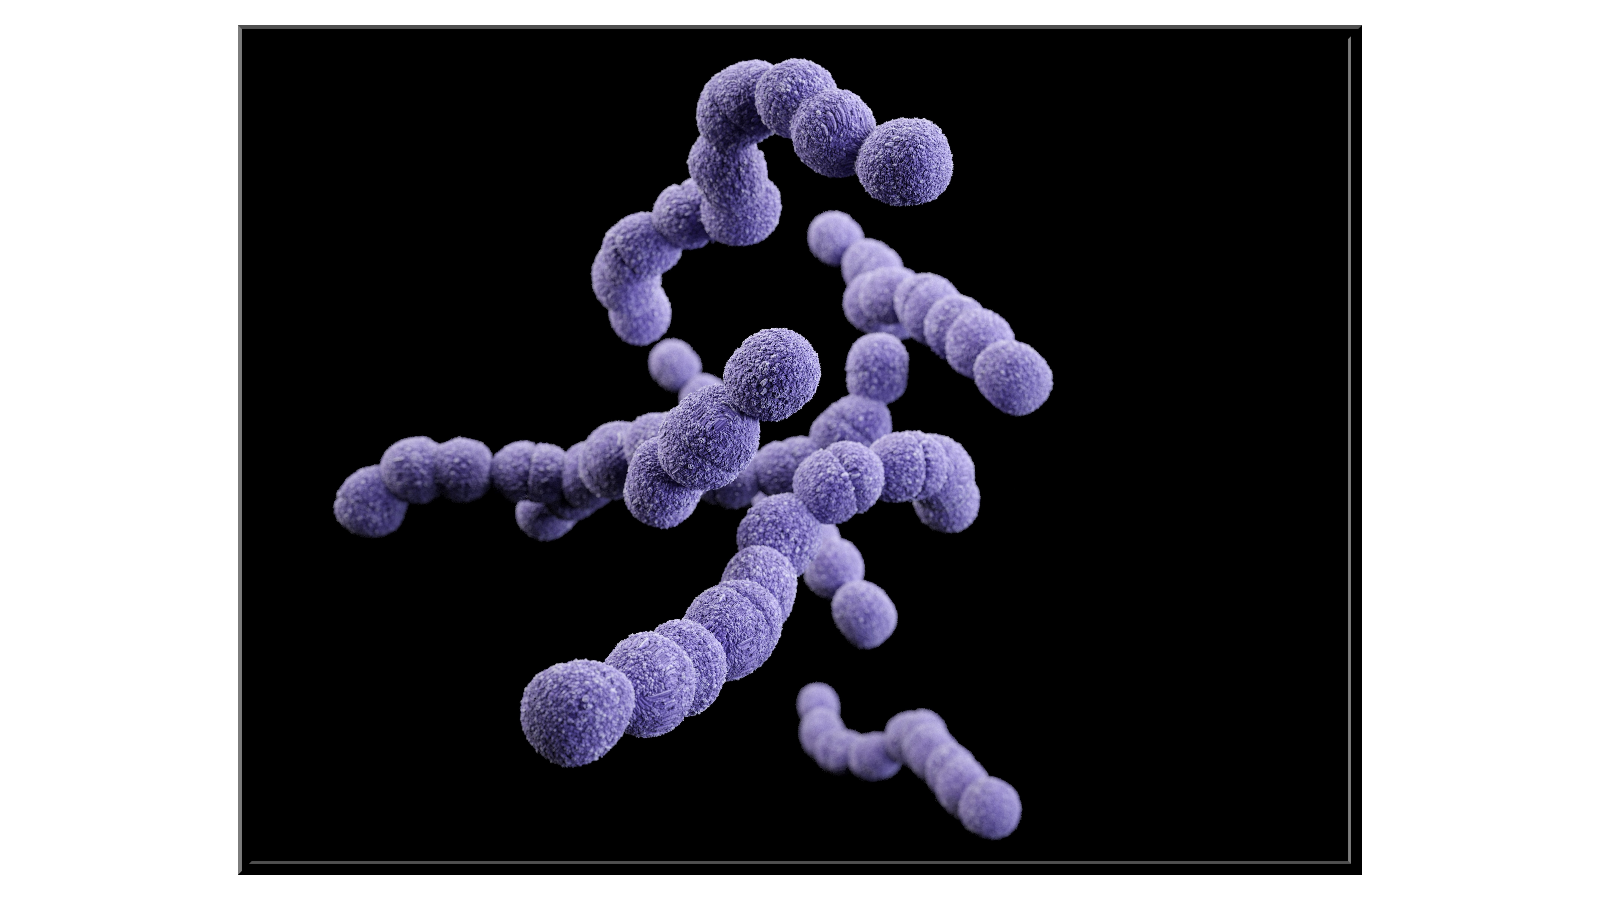 Streptococcus Agalactiae bacteria